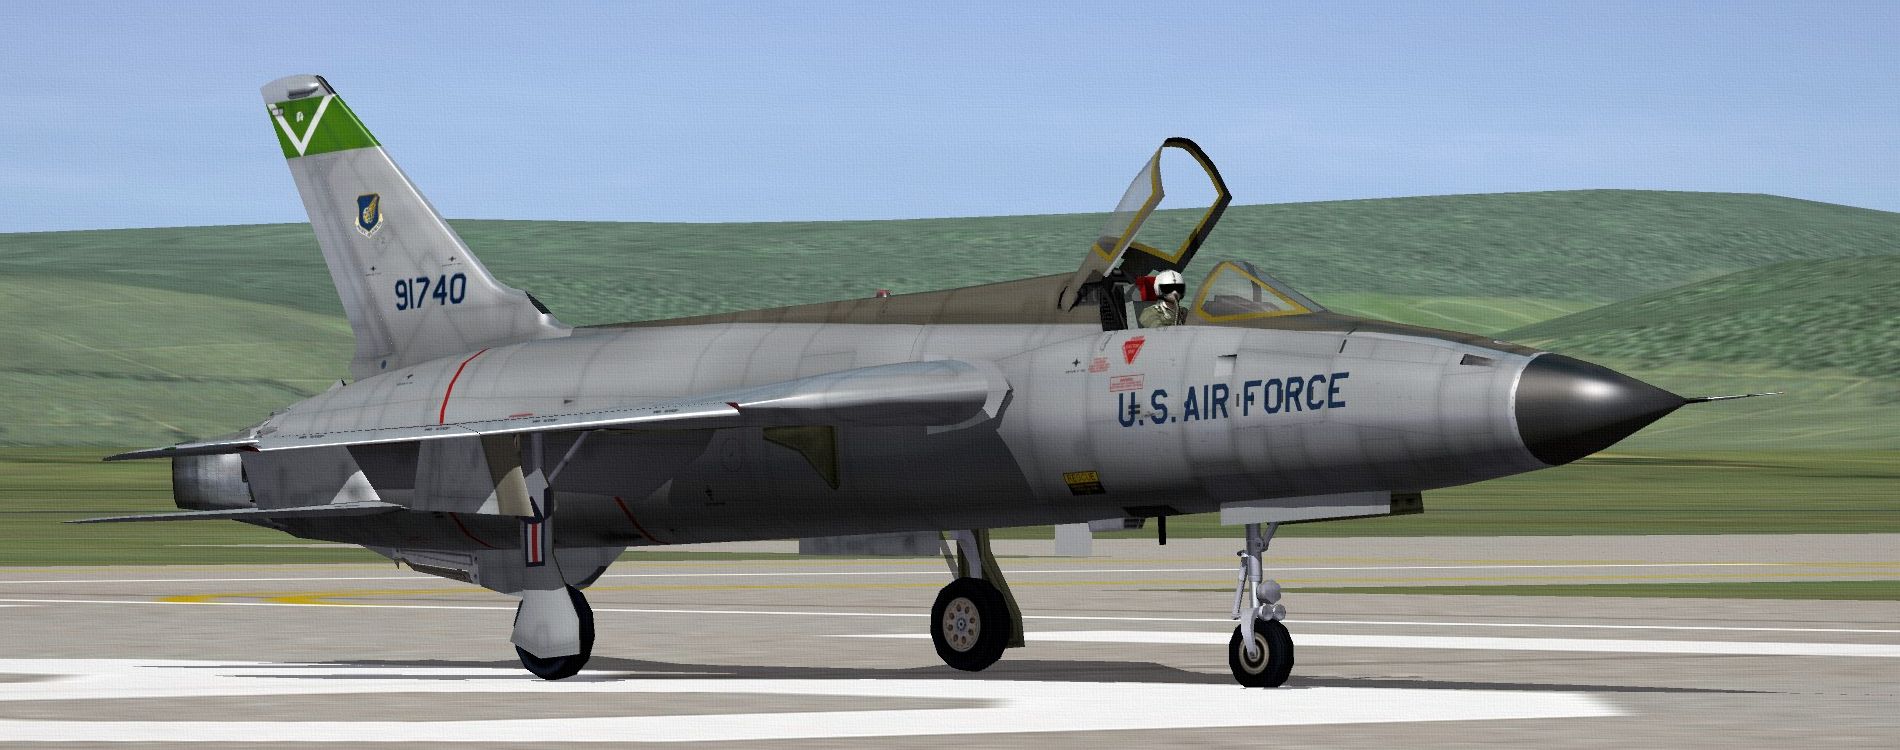 USAFF-105DTHUNDERCHIEF01_zpsf3a5274a.jpg